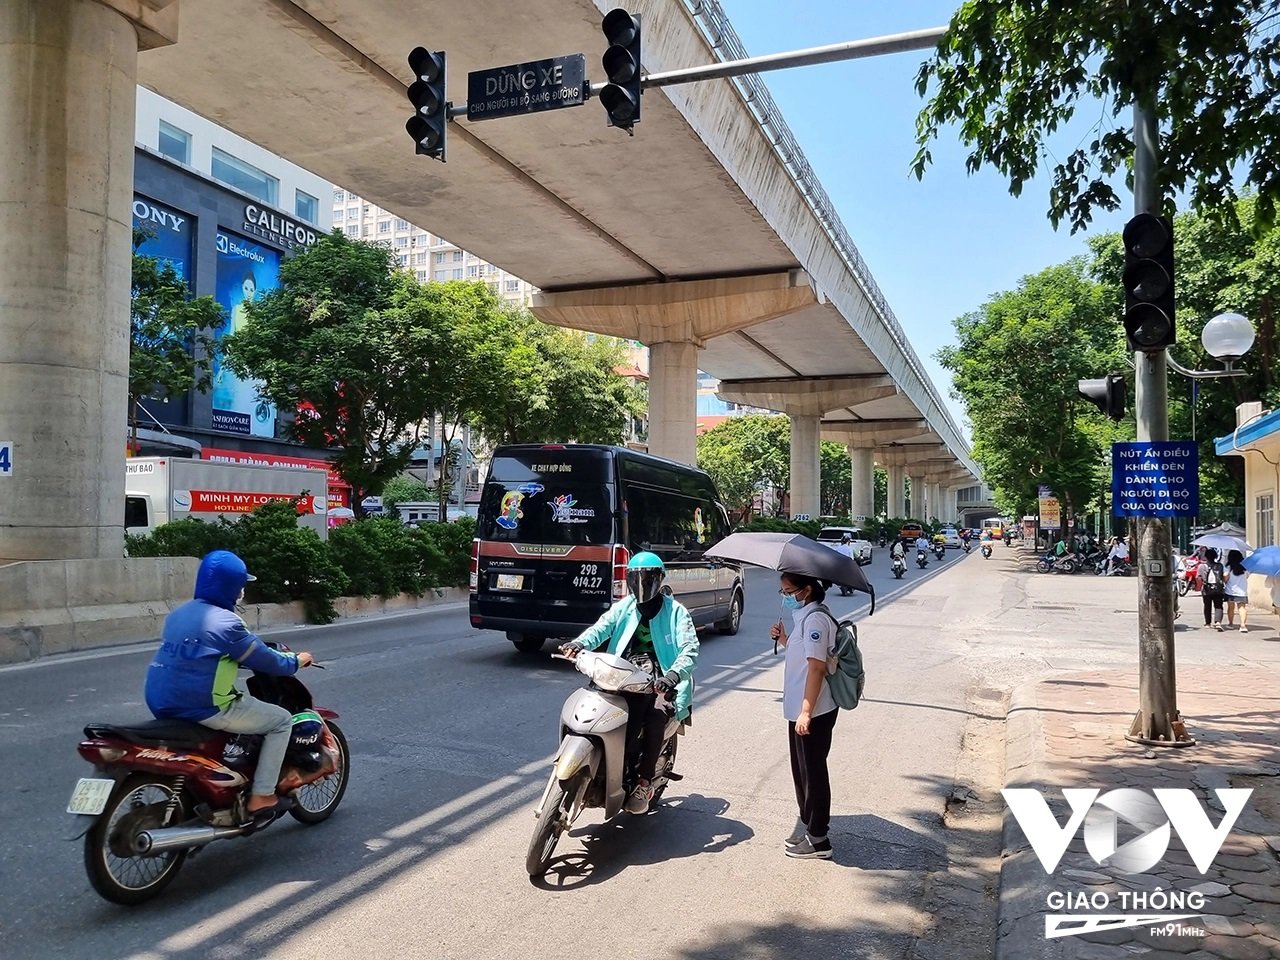 Đèn tín hiệu cho người đi bộ sang đường tại đường Xuân Thủy, đoạn qua Trường đại học Sư phạm Hà Nội.